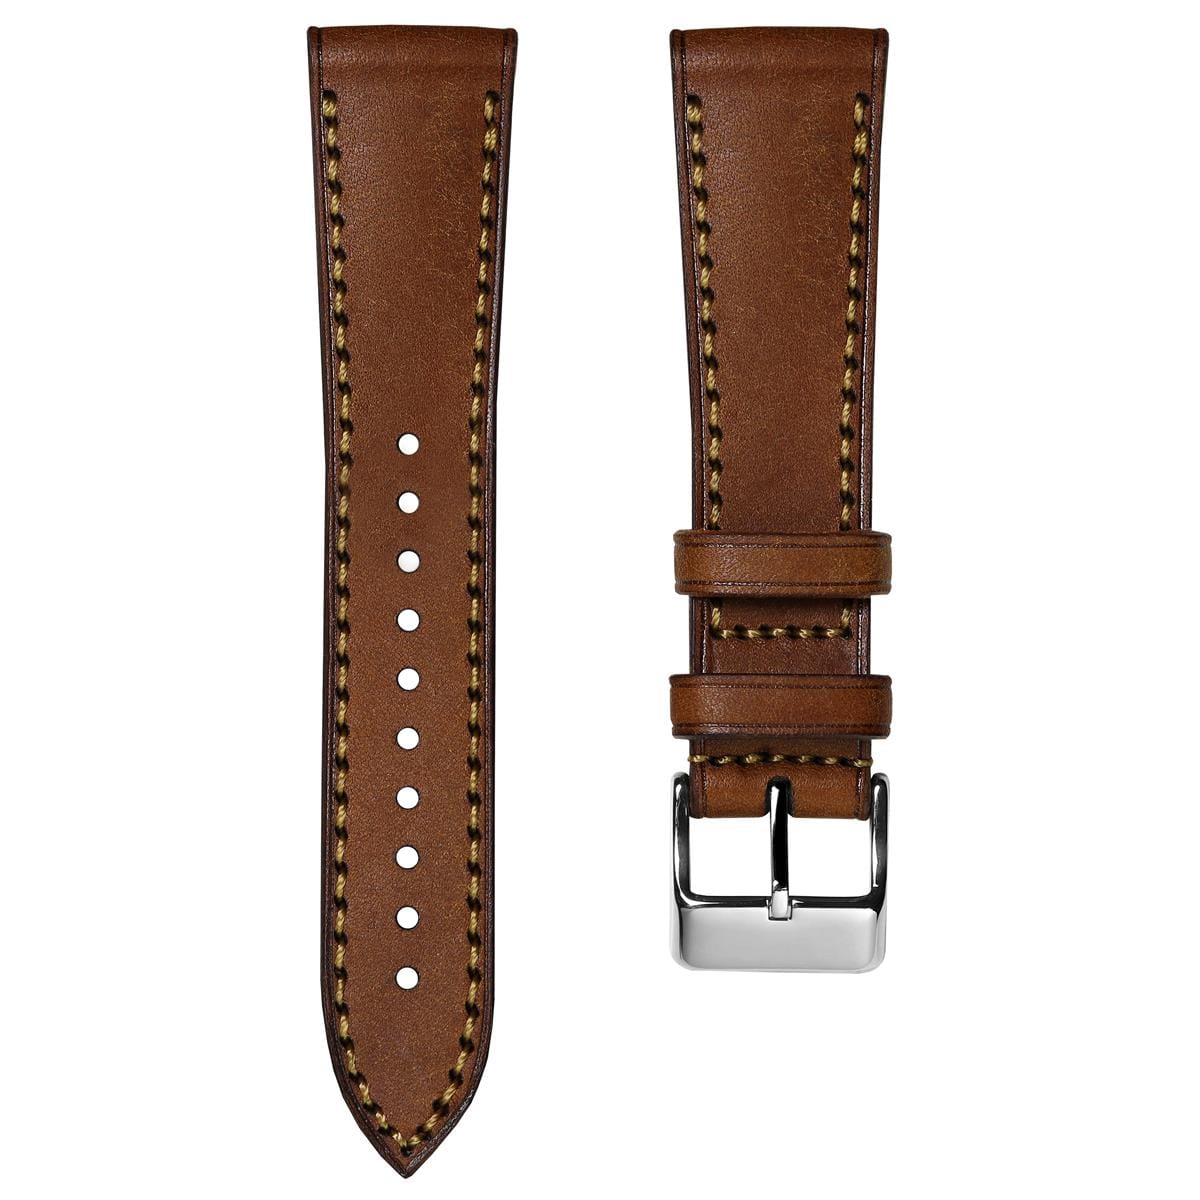 WatchGecko Hatherley Handmade Leather Watch Strap - Cognac Brown